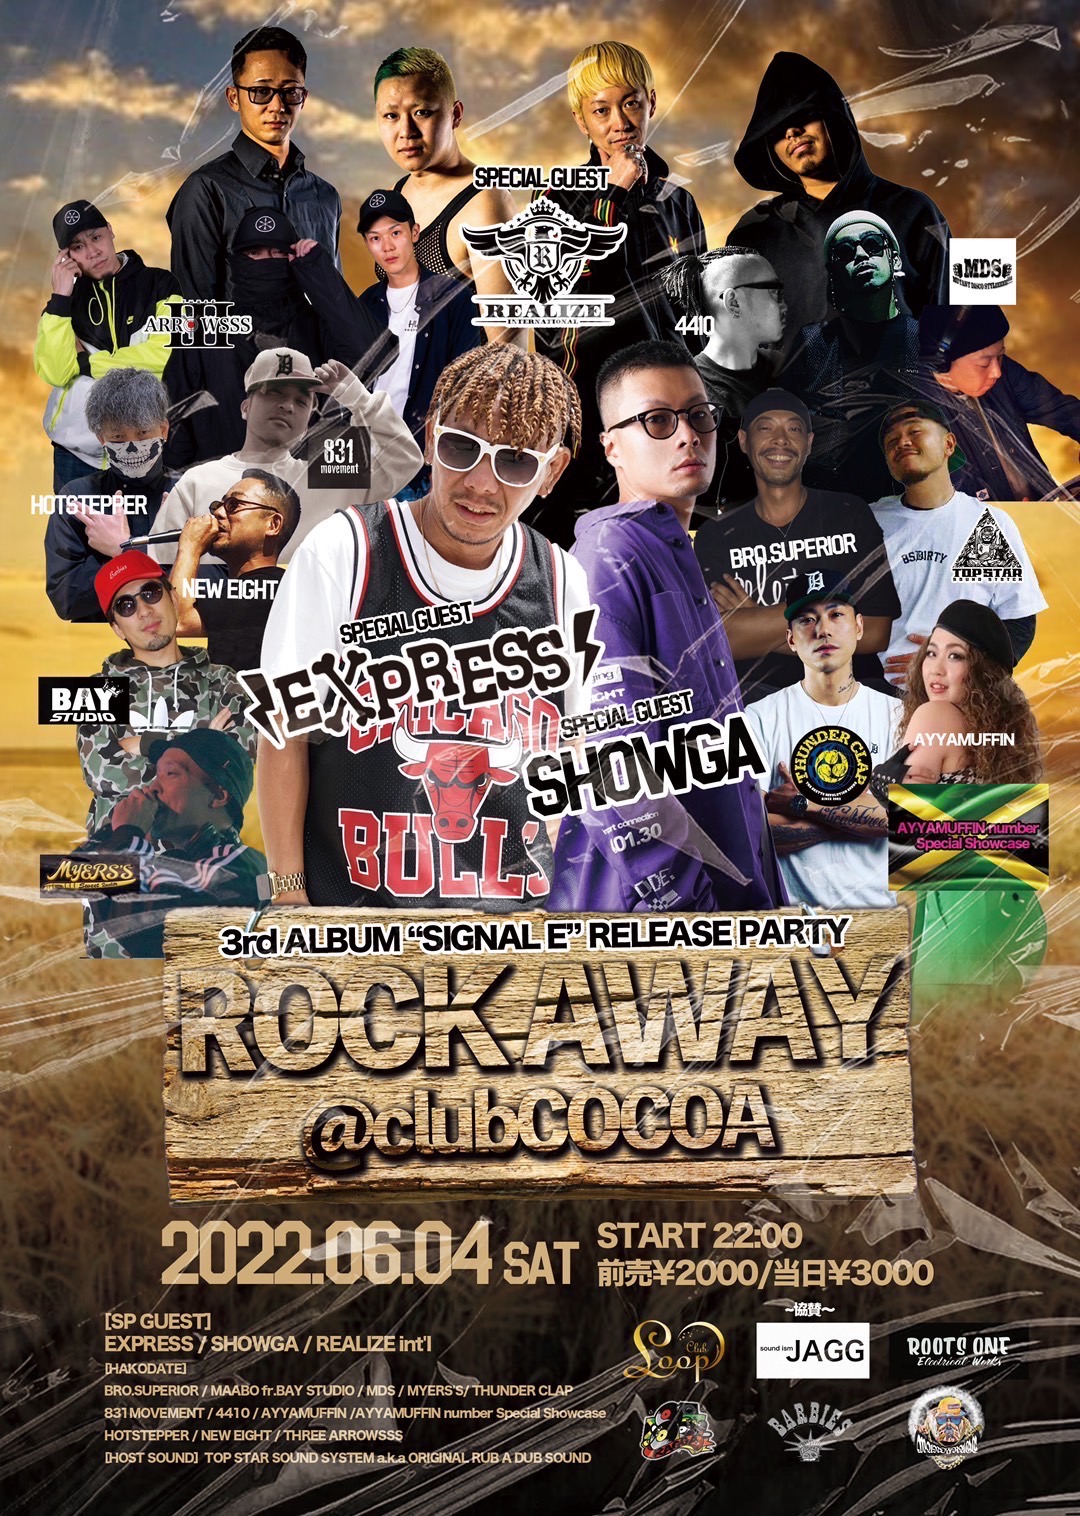 ROCK AWAY EXPRESS 3rd ALBUM “SIGNAL E” RELEASE PARTY – 函館 CLUB Cocoa